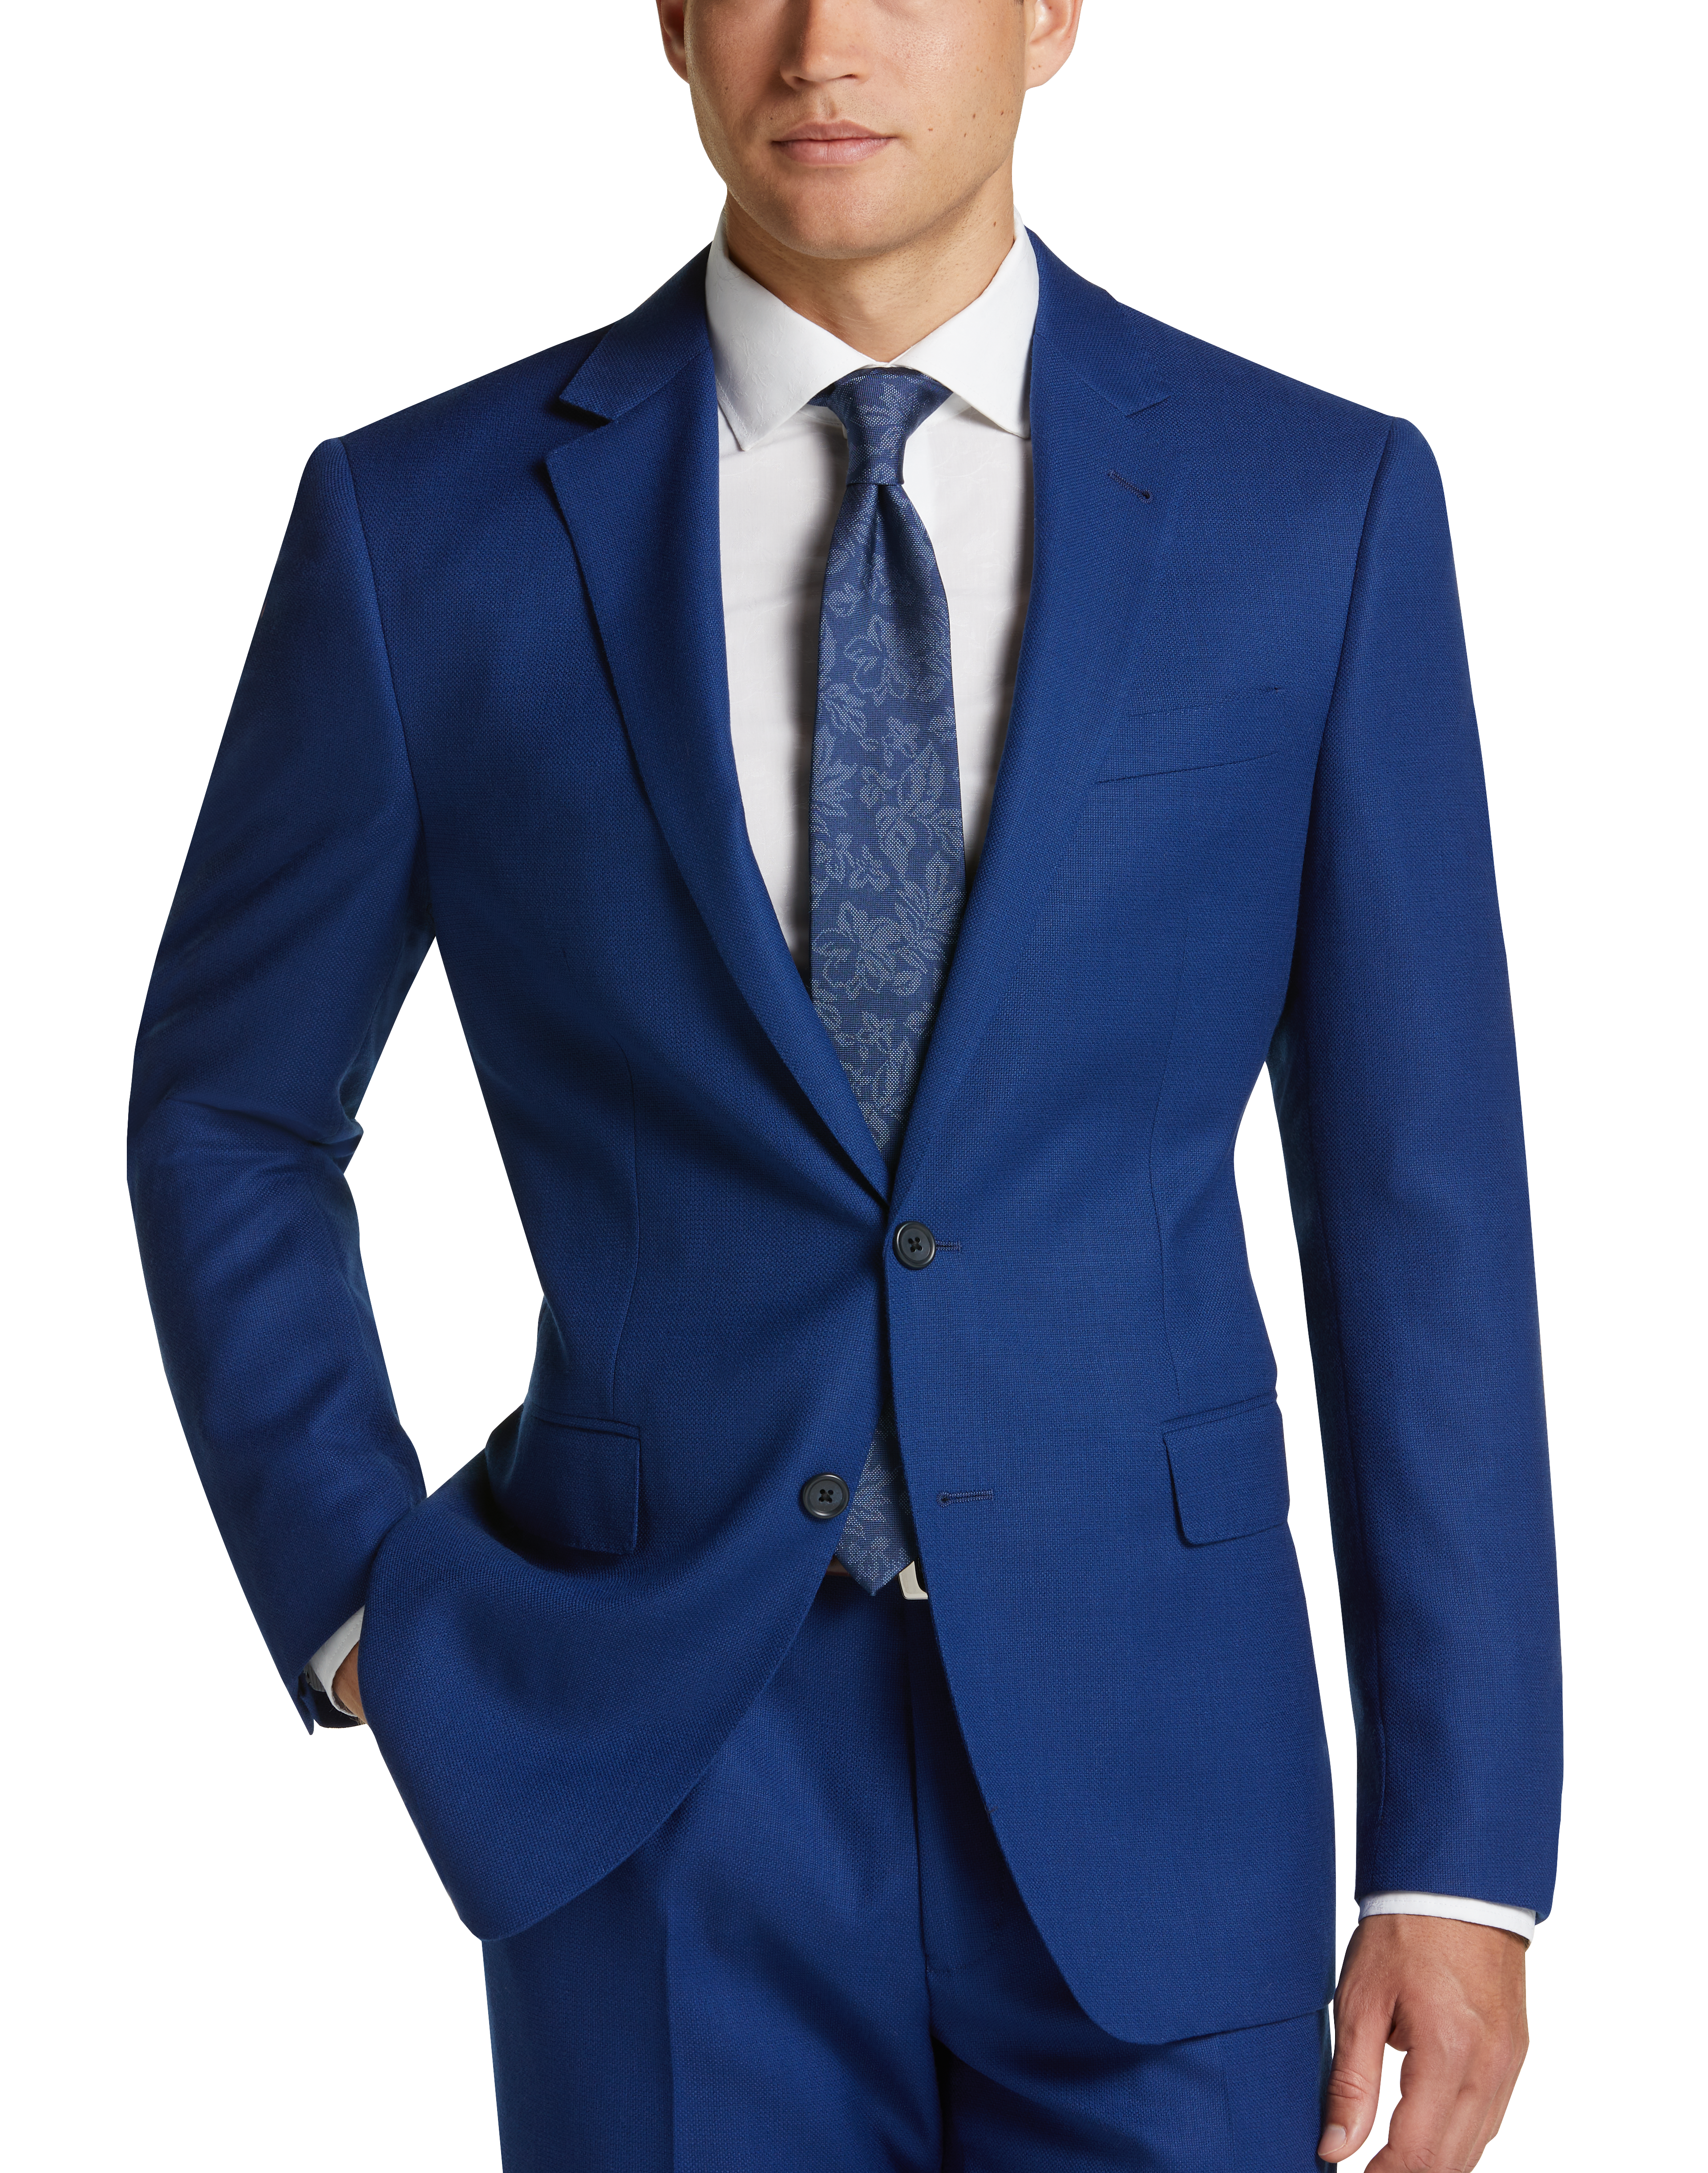 JOE Joseph Abboud Slim Fit Suit, Bright Blue - Men's Sale | Men's Wearhouse